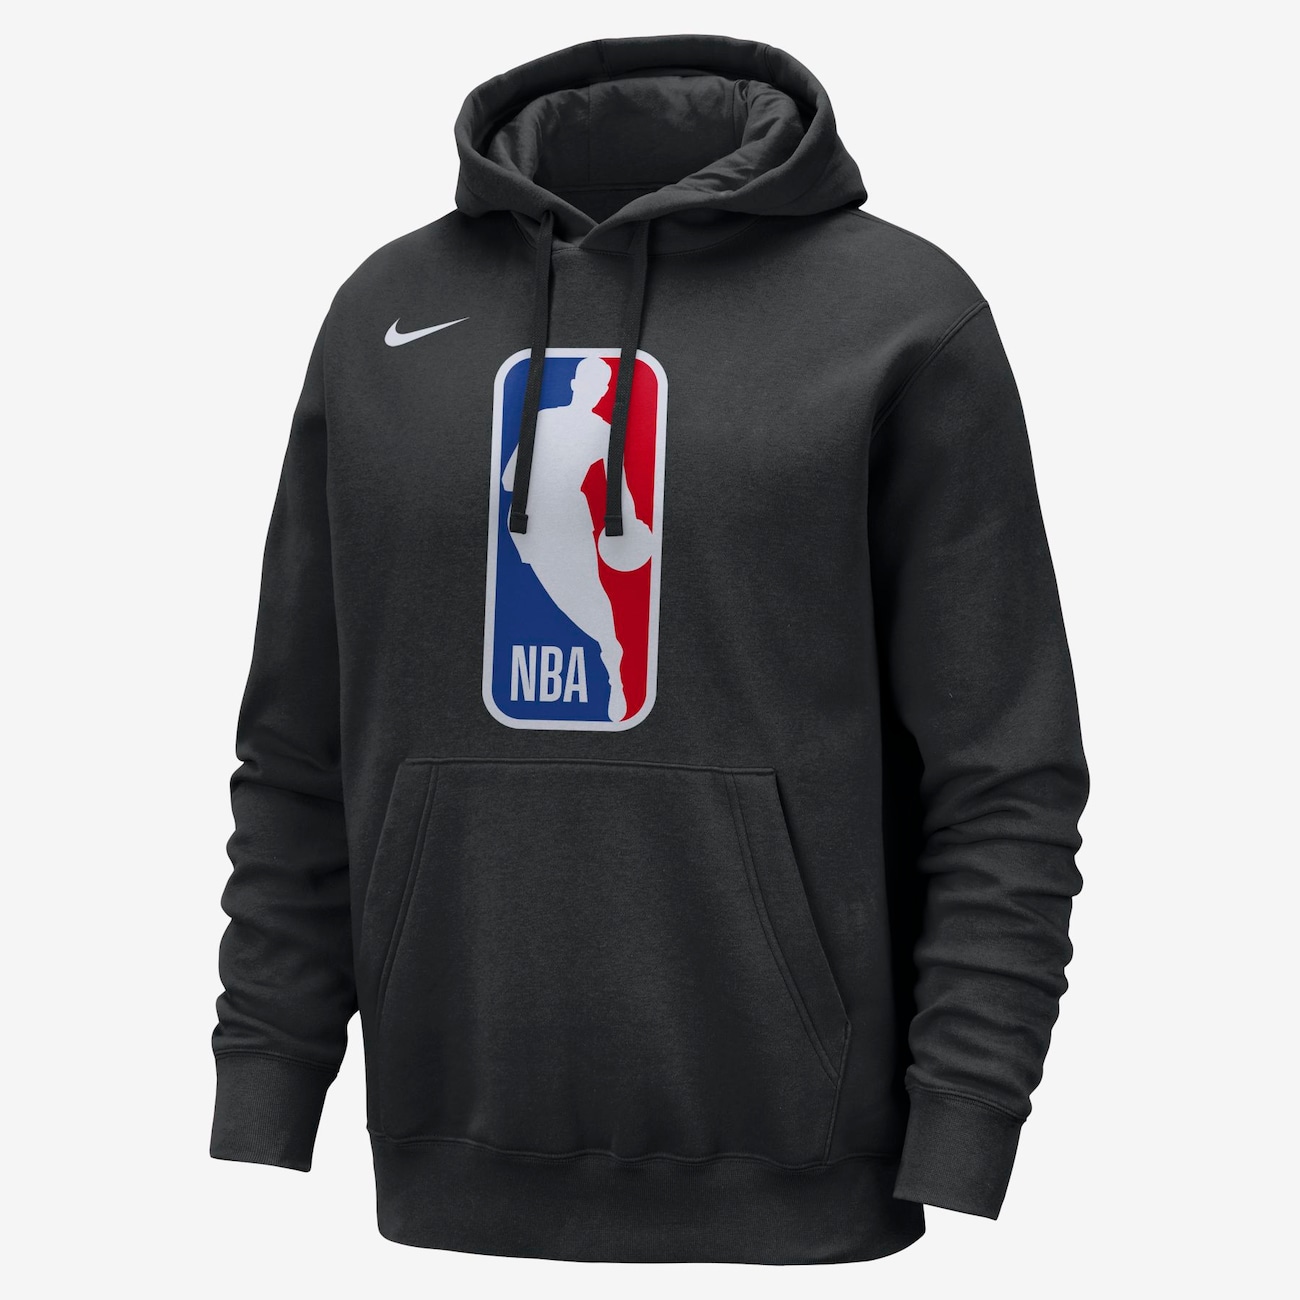 Blusão Nike Club NBA Masculino